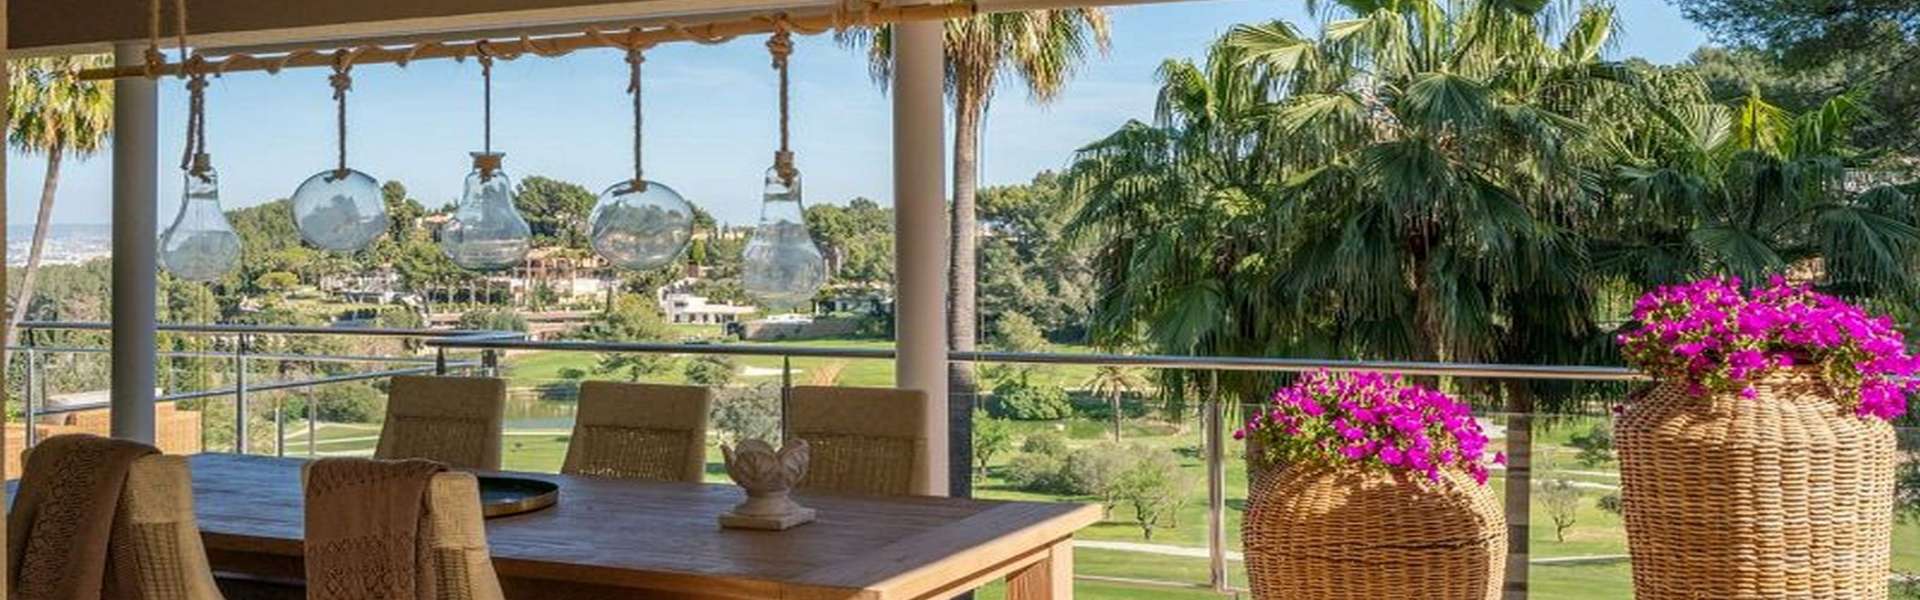 Palma/Son Vida - Traumhafte Villa mit Blick auf den Golfplatz